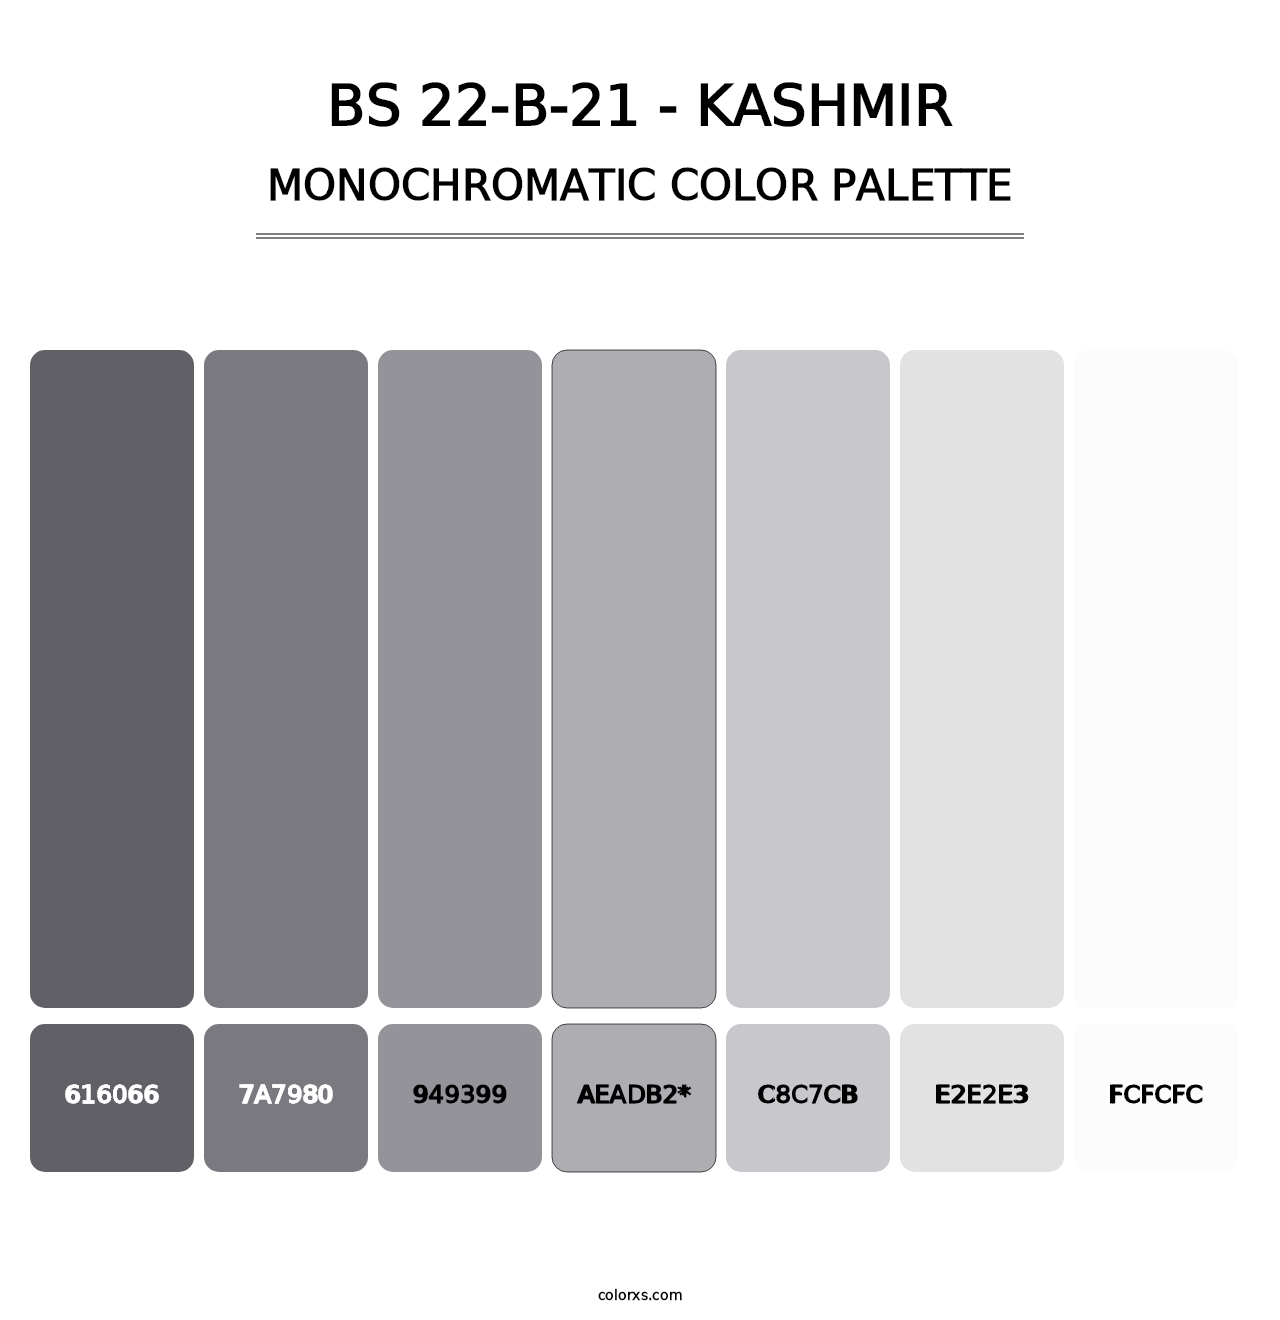 BS 22-B-21 - Kashmir - Monochromatic Color Palette